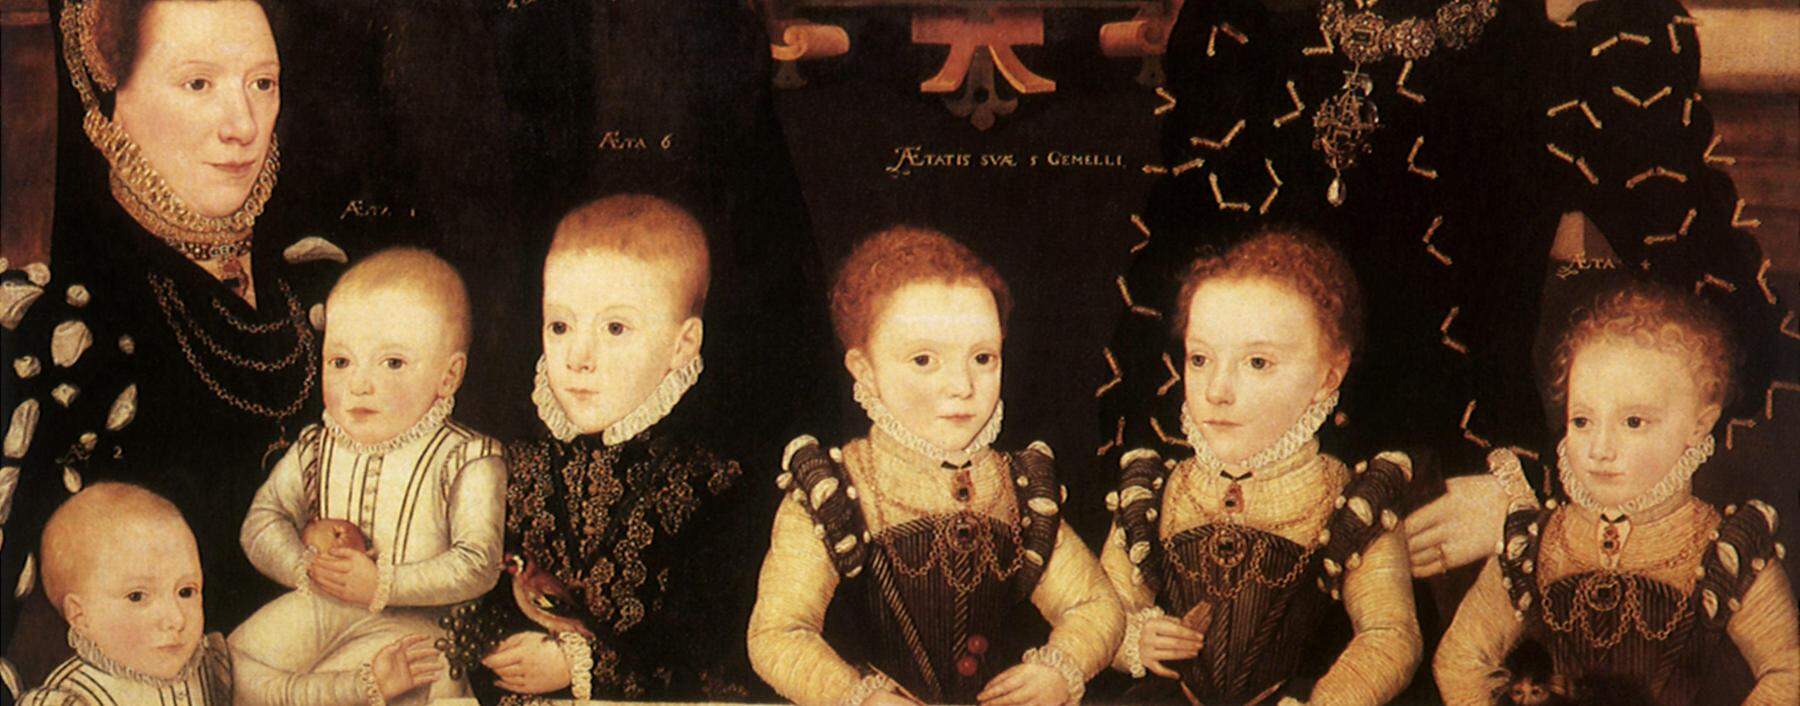 Kinder als erstarrte Miniaturerwachsene auf den Familienporträts. William Brooke, 10. Lord of Cobham, mit Familie 1567.